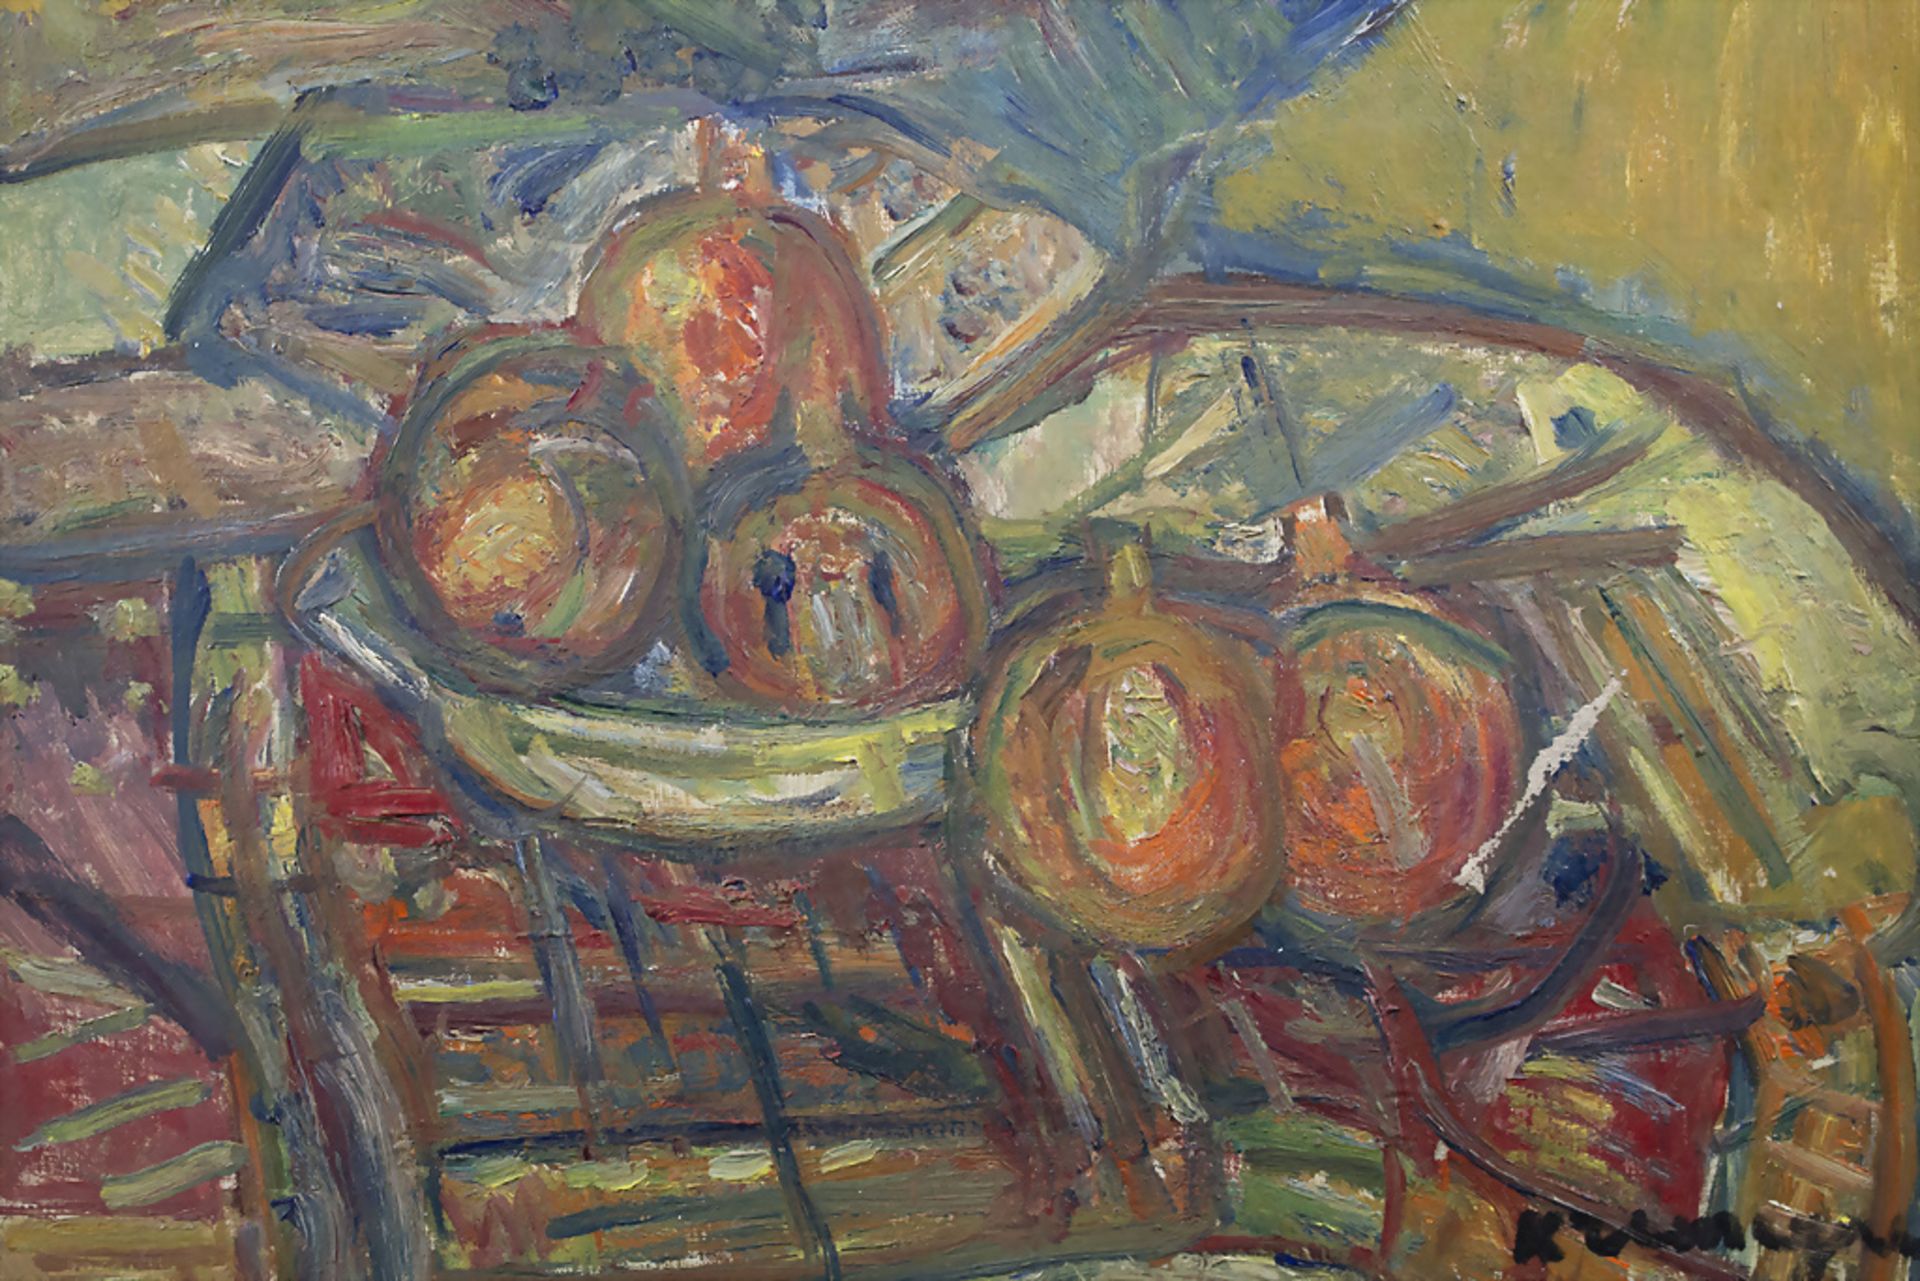 Pinchus KREMEGNE (1890-1981), 'Stillleben mit Zitrusfrüchten' / 'Still life with citrus fruits' - Image 3 of 5